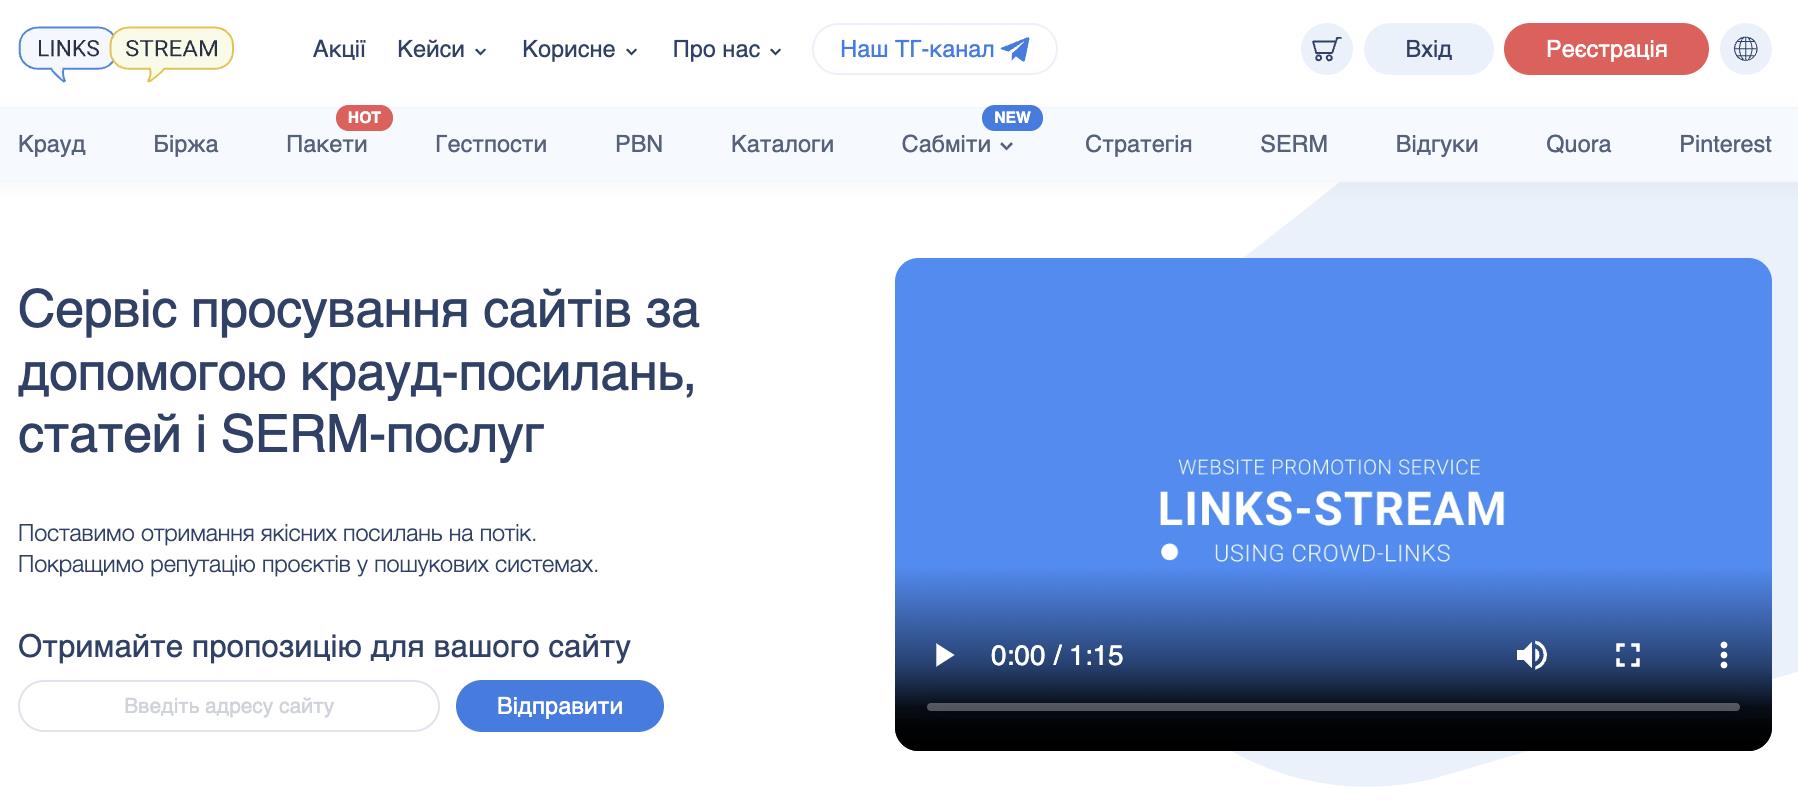 Links-Stream – продаж посилань для сайту в Україні та інших країнах світу